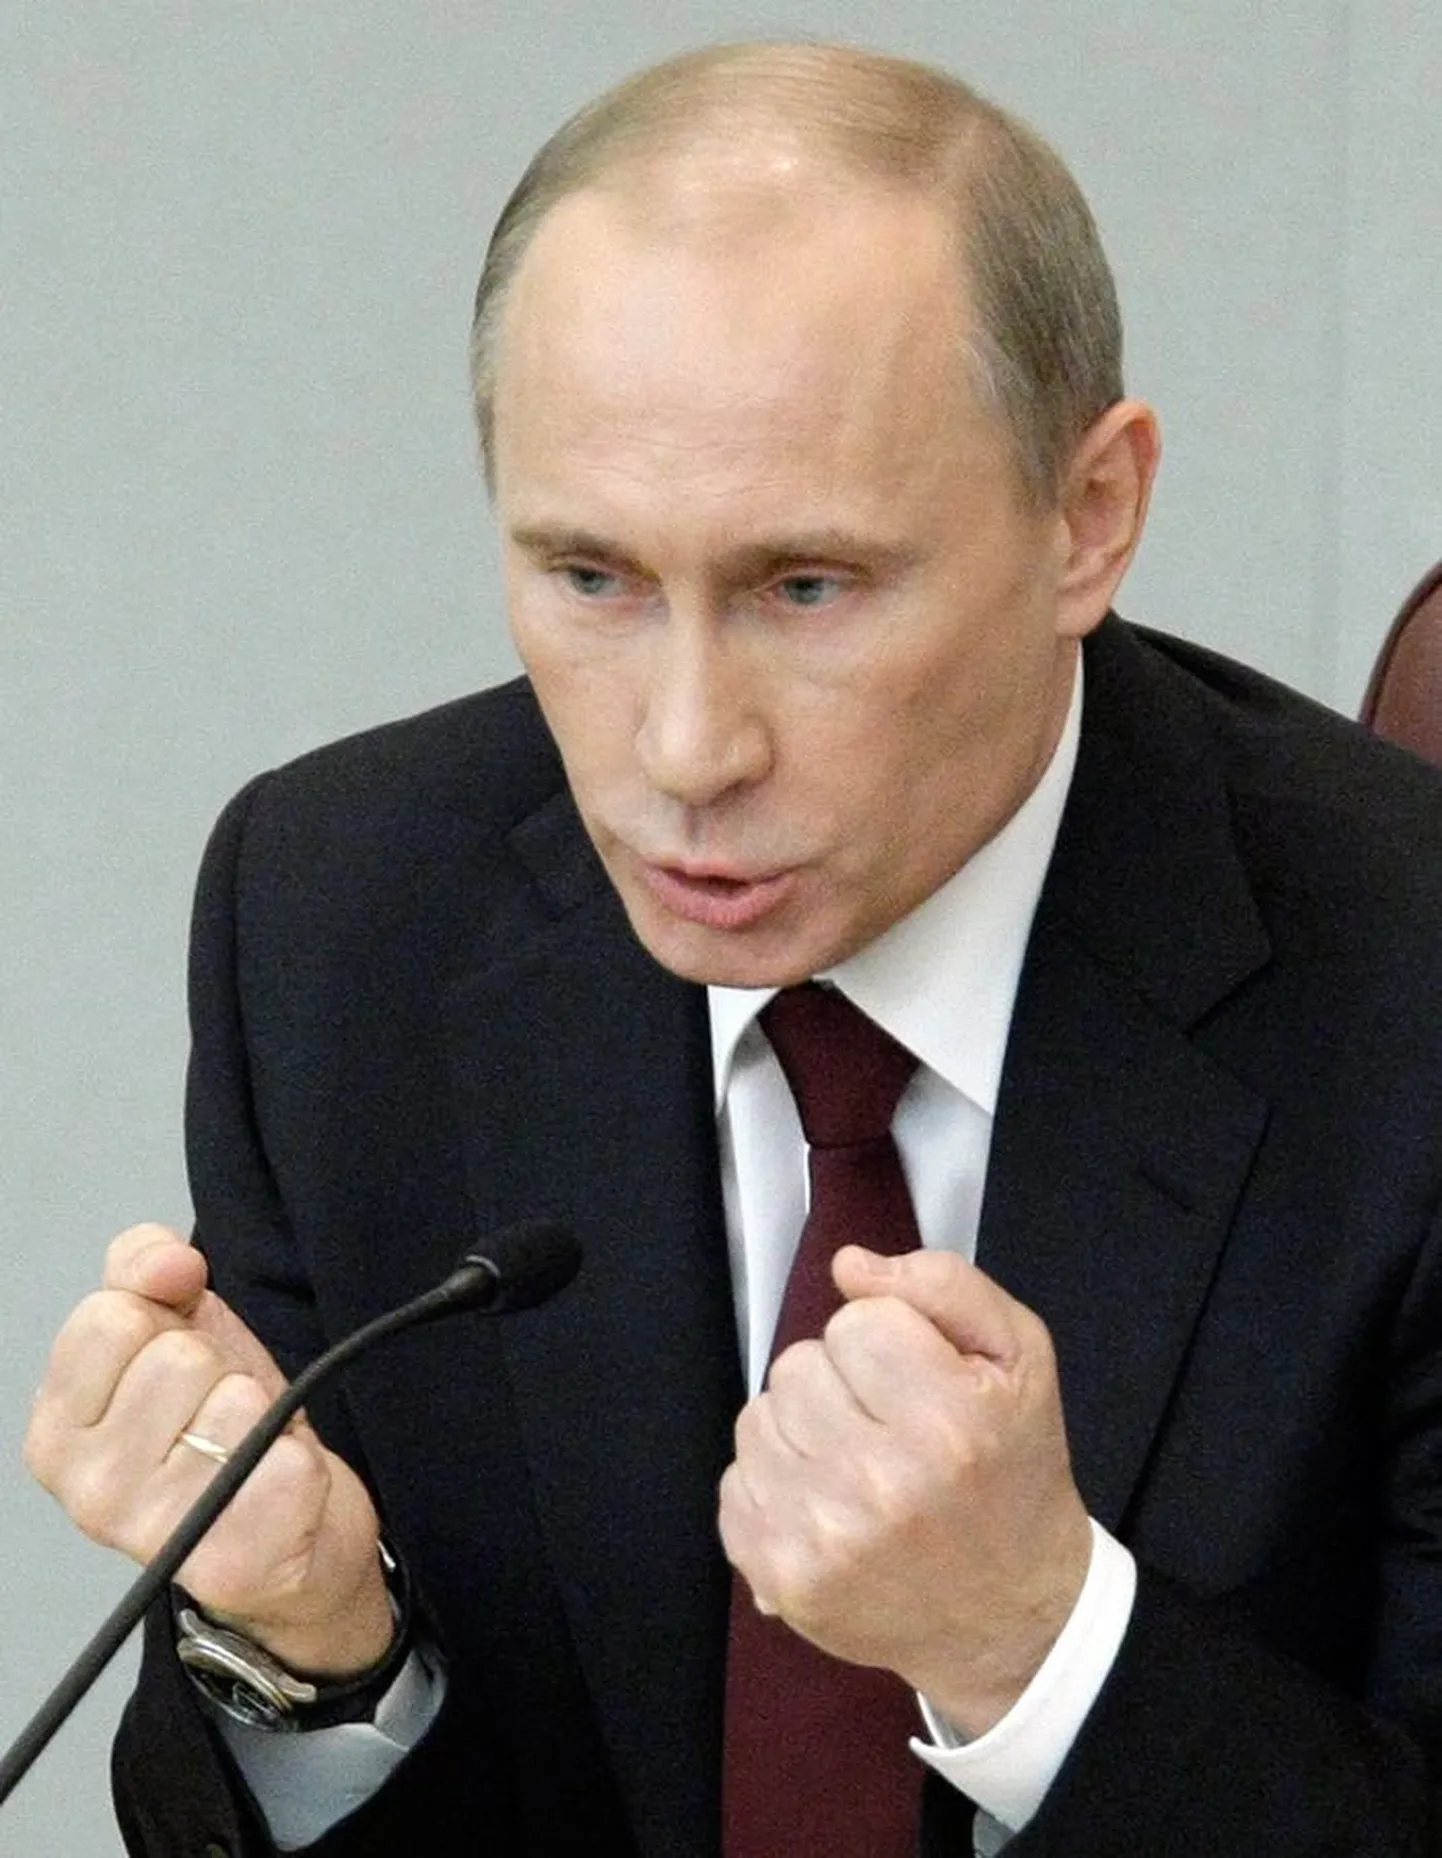 Putin kurtis eile duuma ees, et telekanalid ei näita saateid kangelaslikest tööinimestest, kelle najal kõik püsibki.